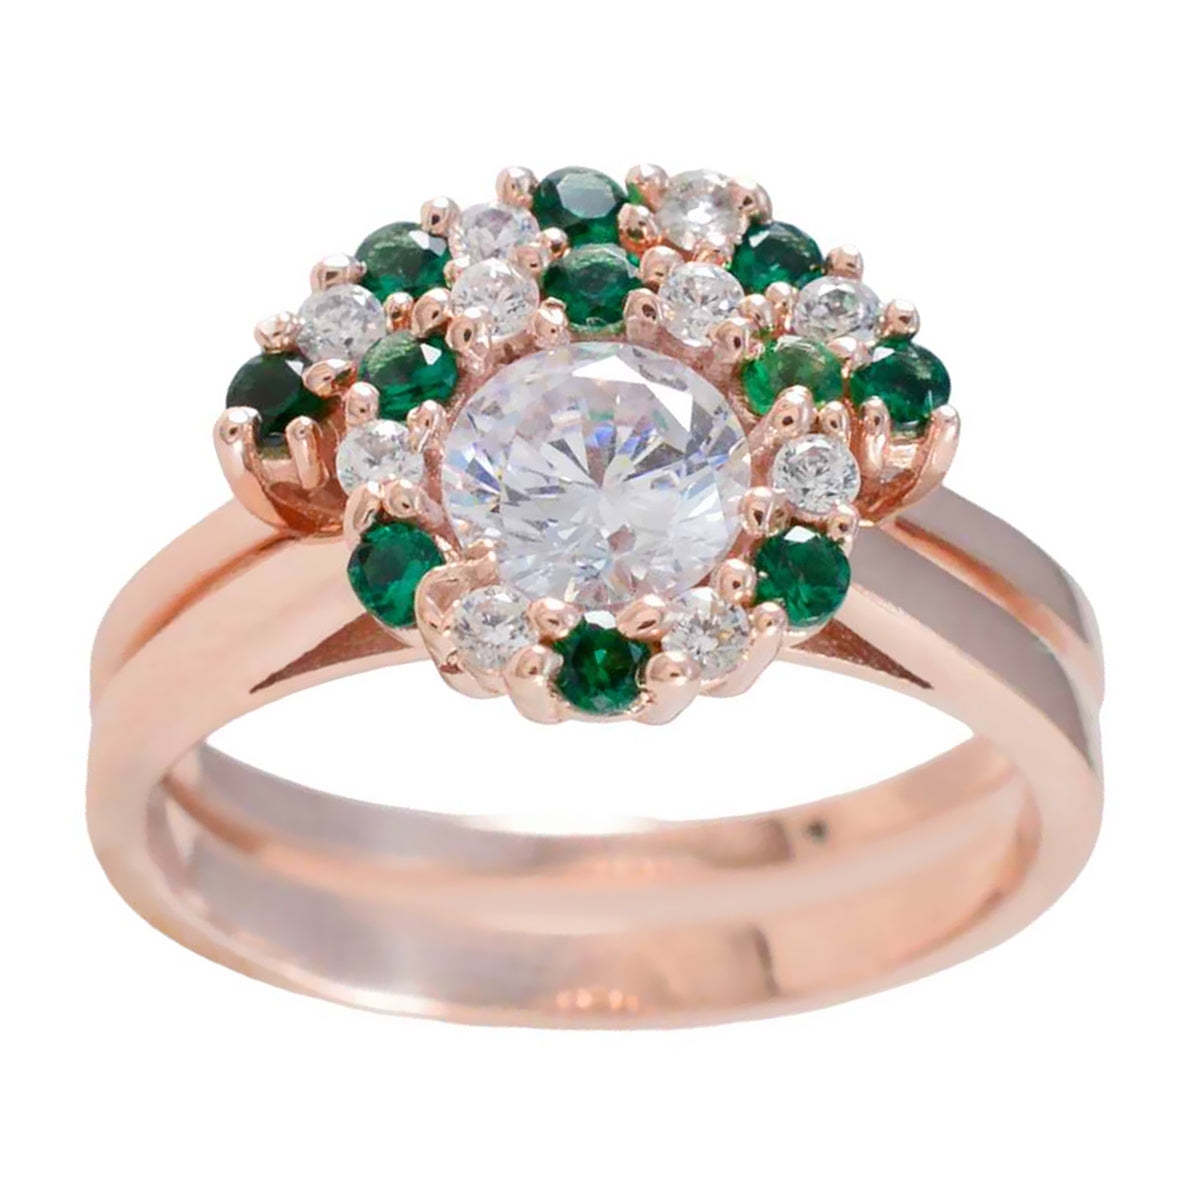 Riyo Prachtige zilveren ring met roségouden smaragdgroene CZ-steen Ronde vorm Prong Setting Antieke sieraden Paasring